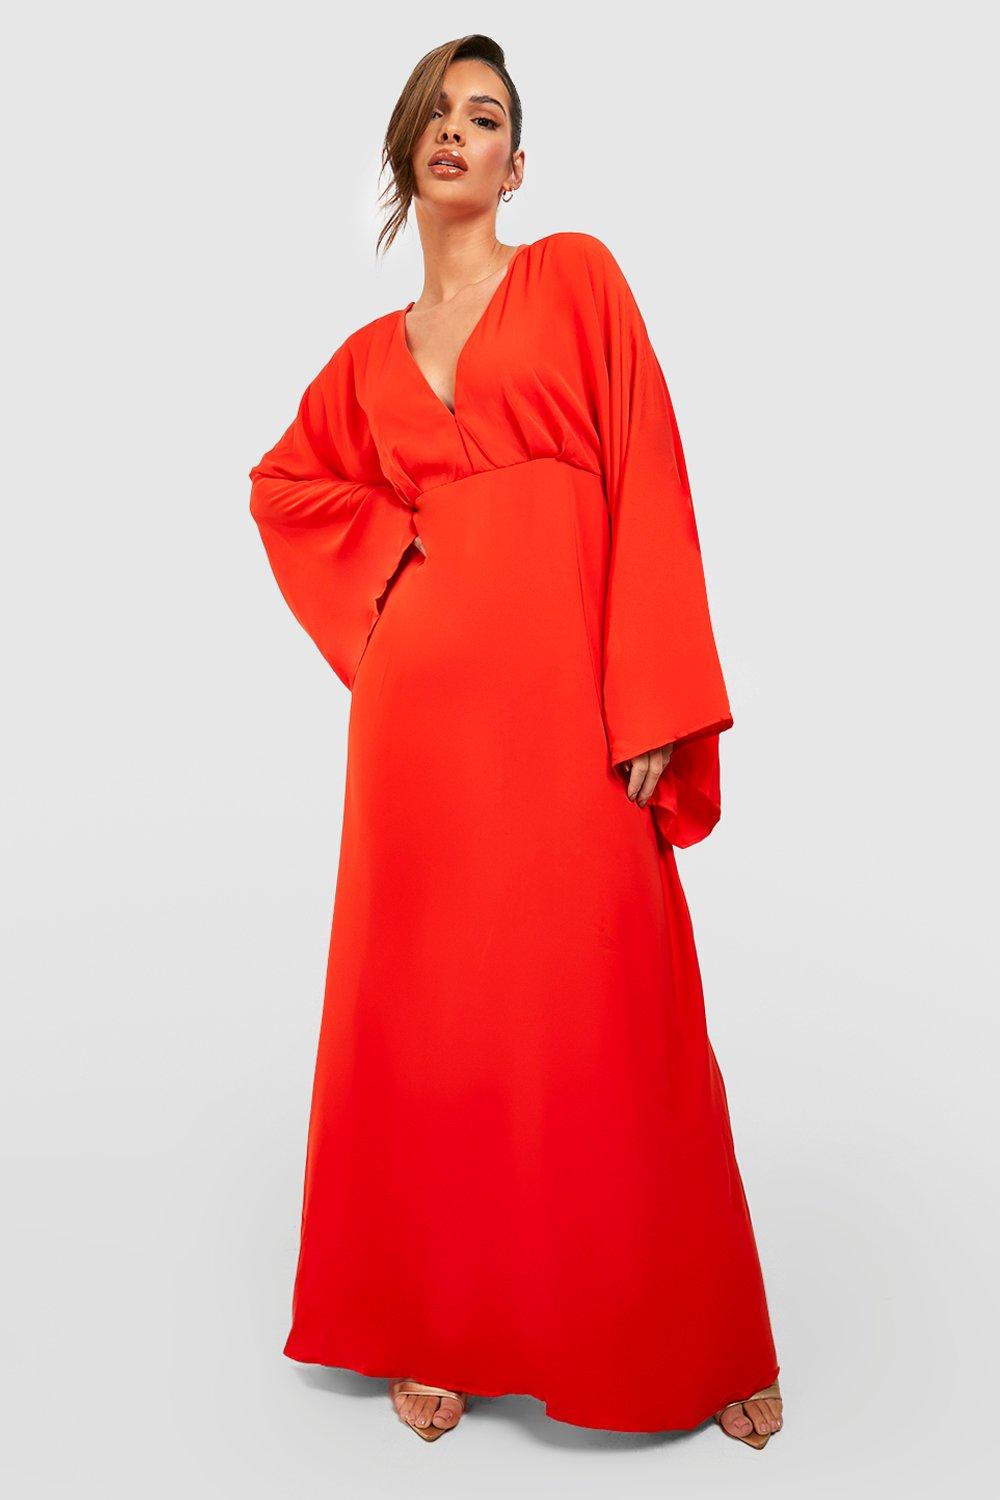 Vintage Evening Dresses Womens Plunge Wide Sleeve Maxi Dress - Orange - 14 $32.00 AT vintagedancer.com